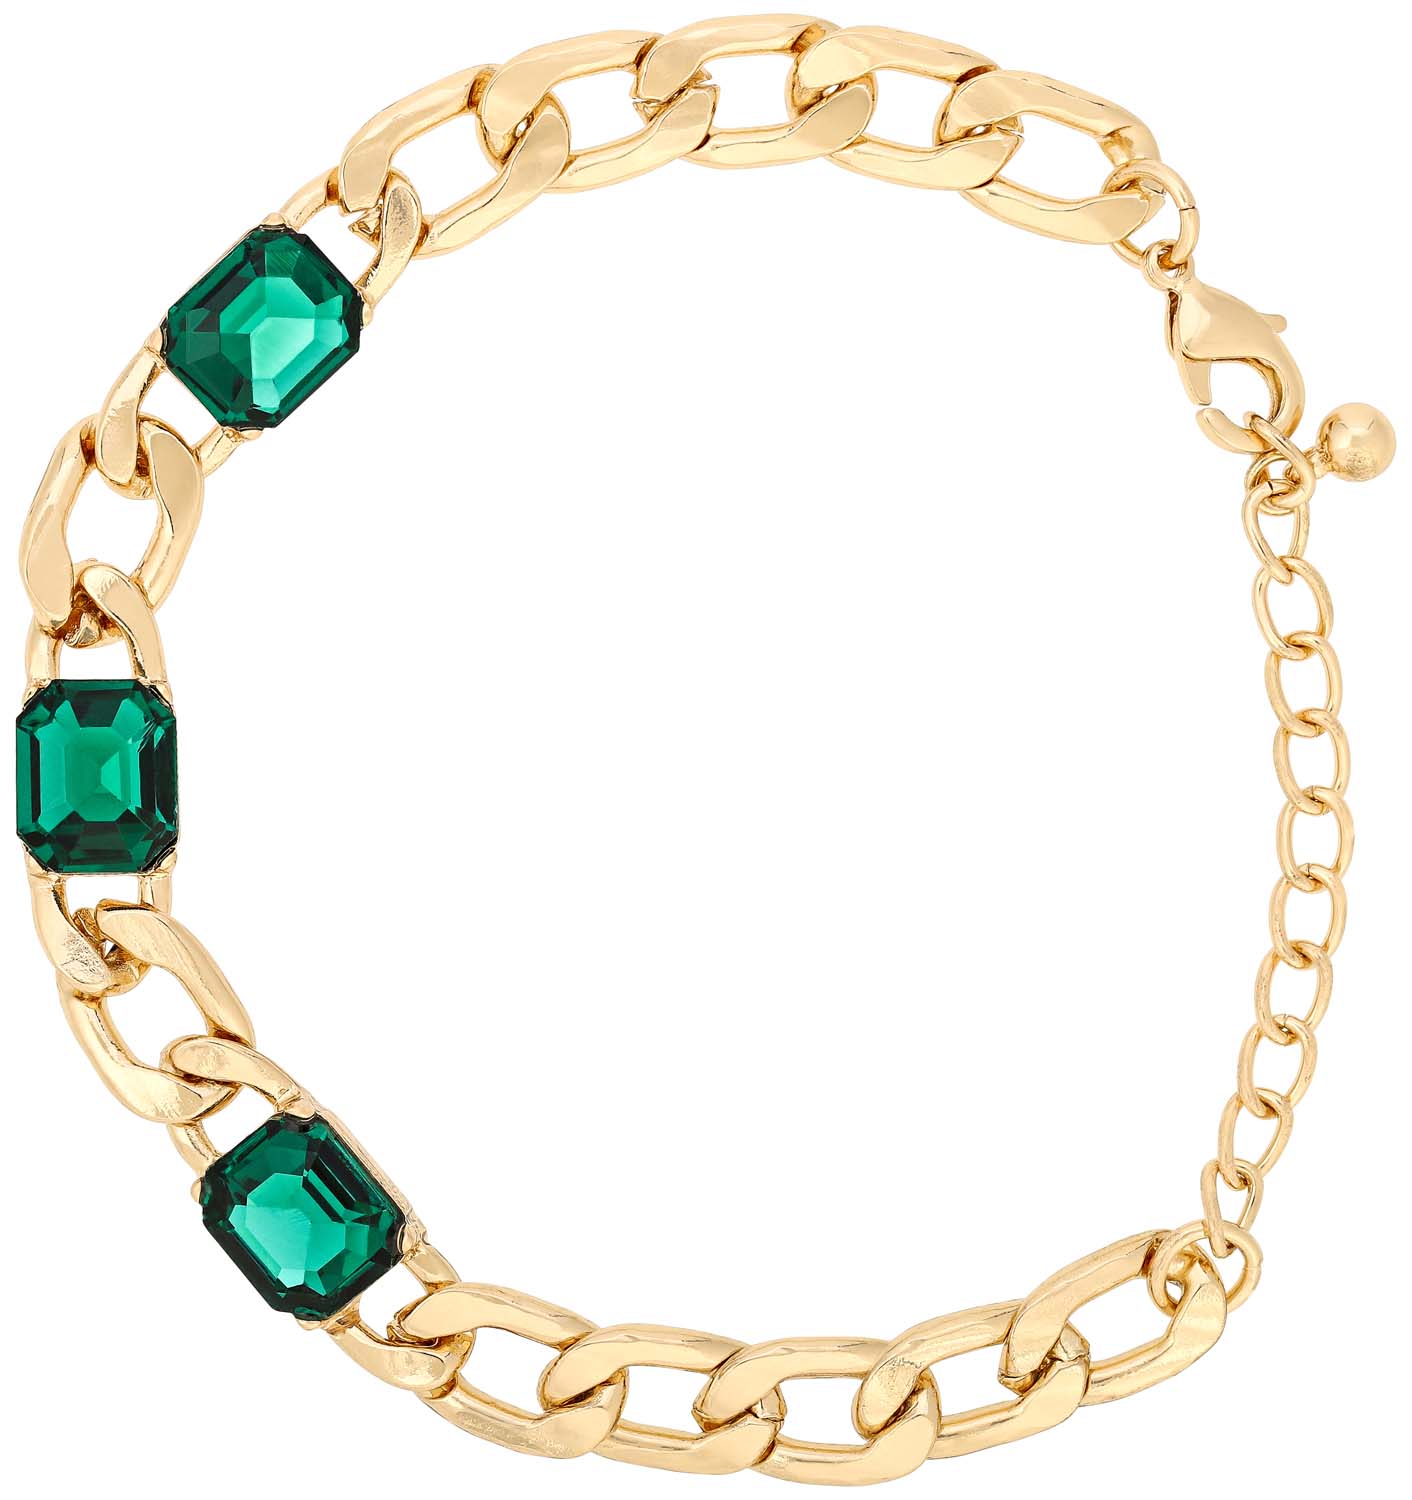 Bracelet - Classy Green